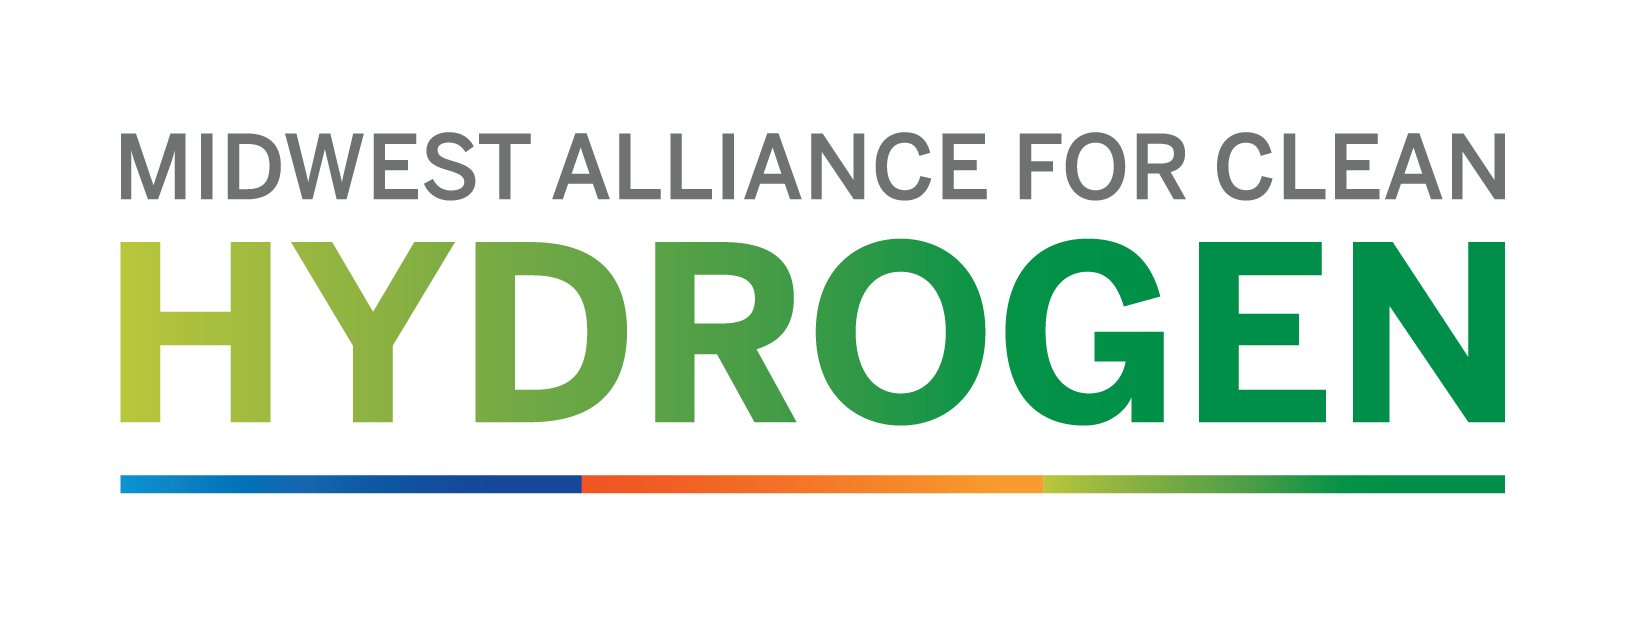 Midwest Hydrogen Alliance Logo